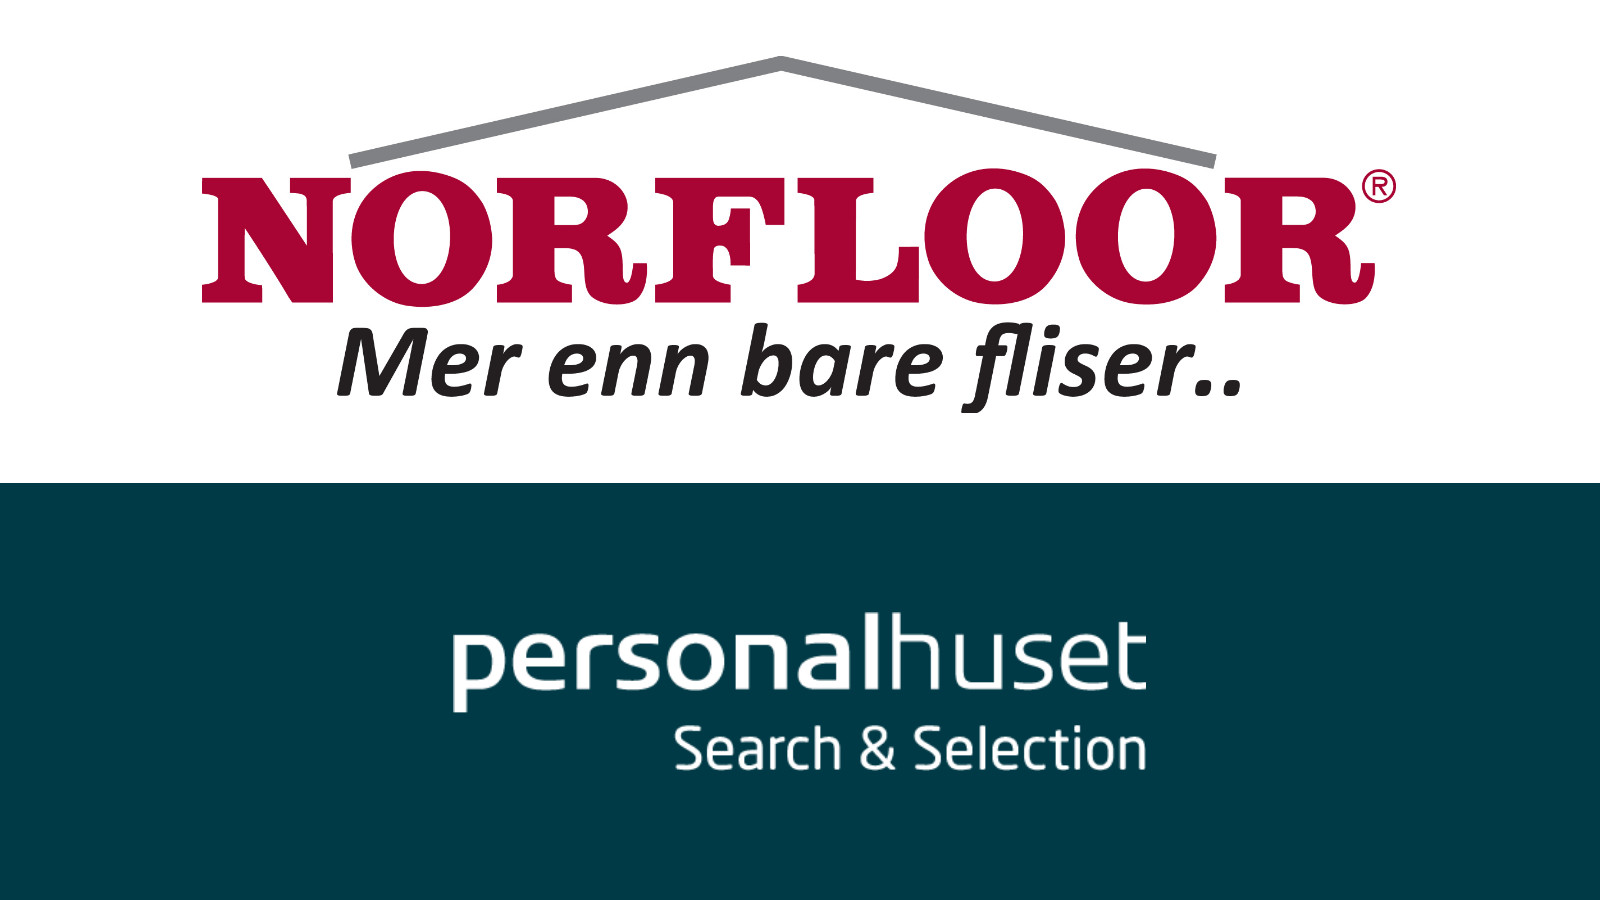 Norfloor AS logo